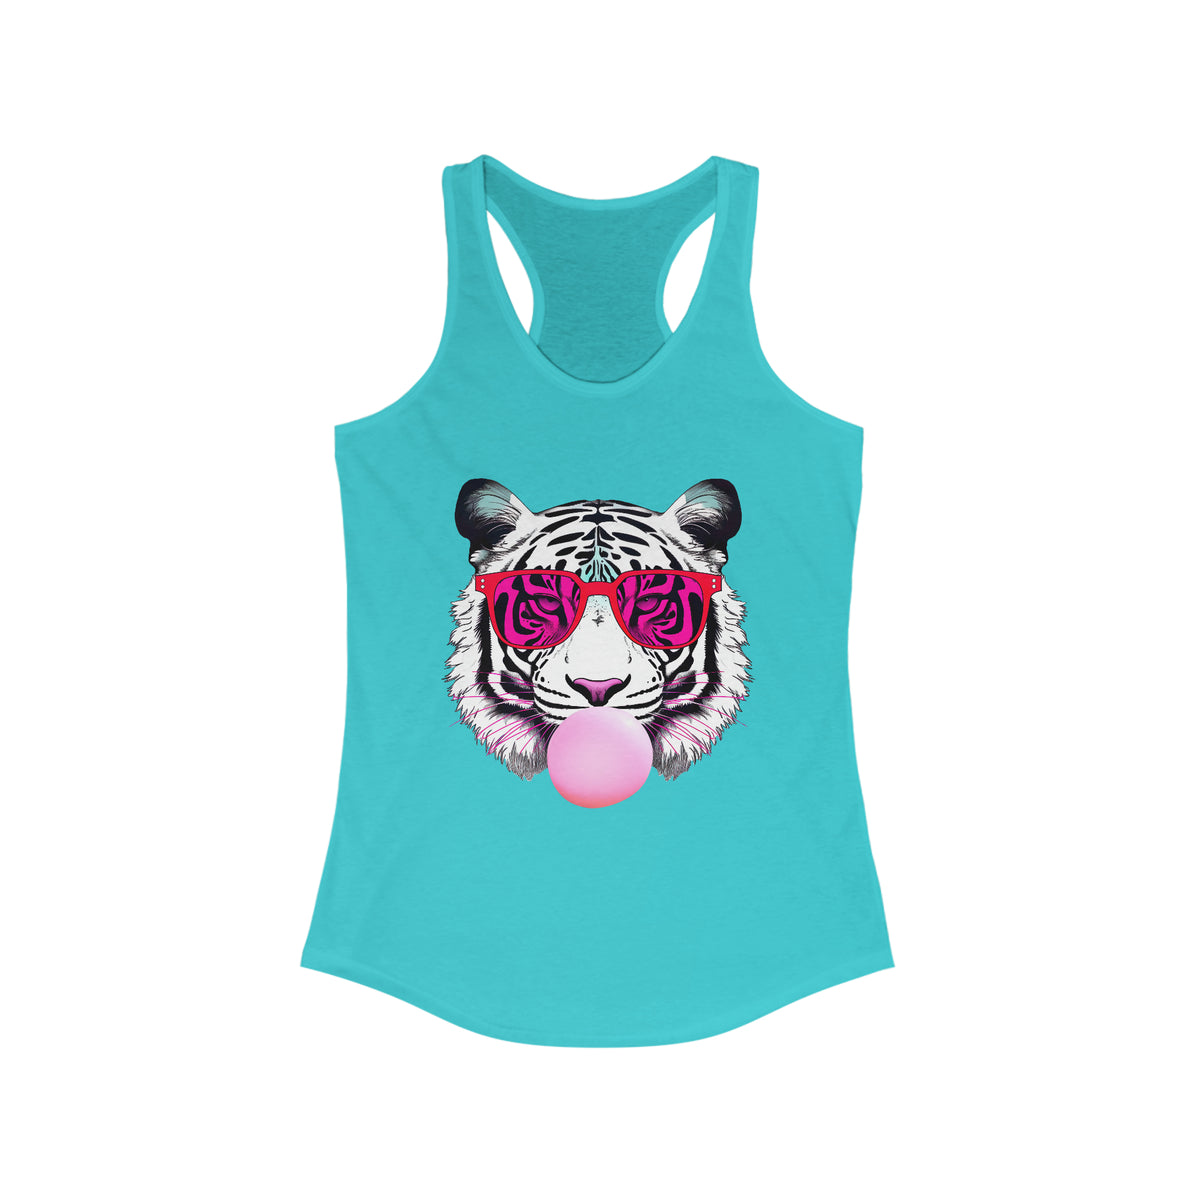 Bubblegum Pink Tiger Shirt | Tiger Face Shirt | Pop Art Shirt | Gift for Animal Lover Summer Shirt | Women's Slim-fit Racerback Tank Top